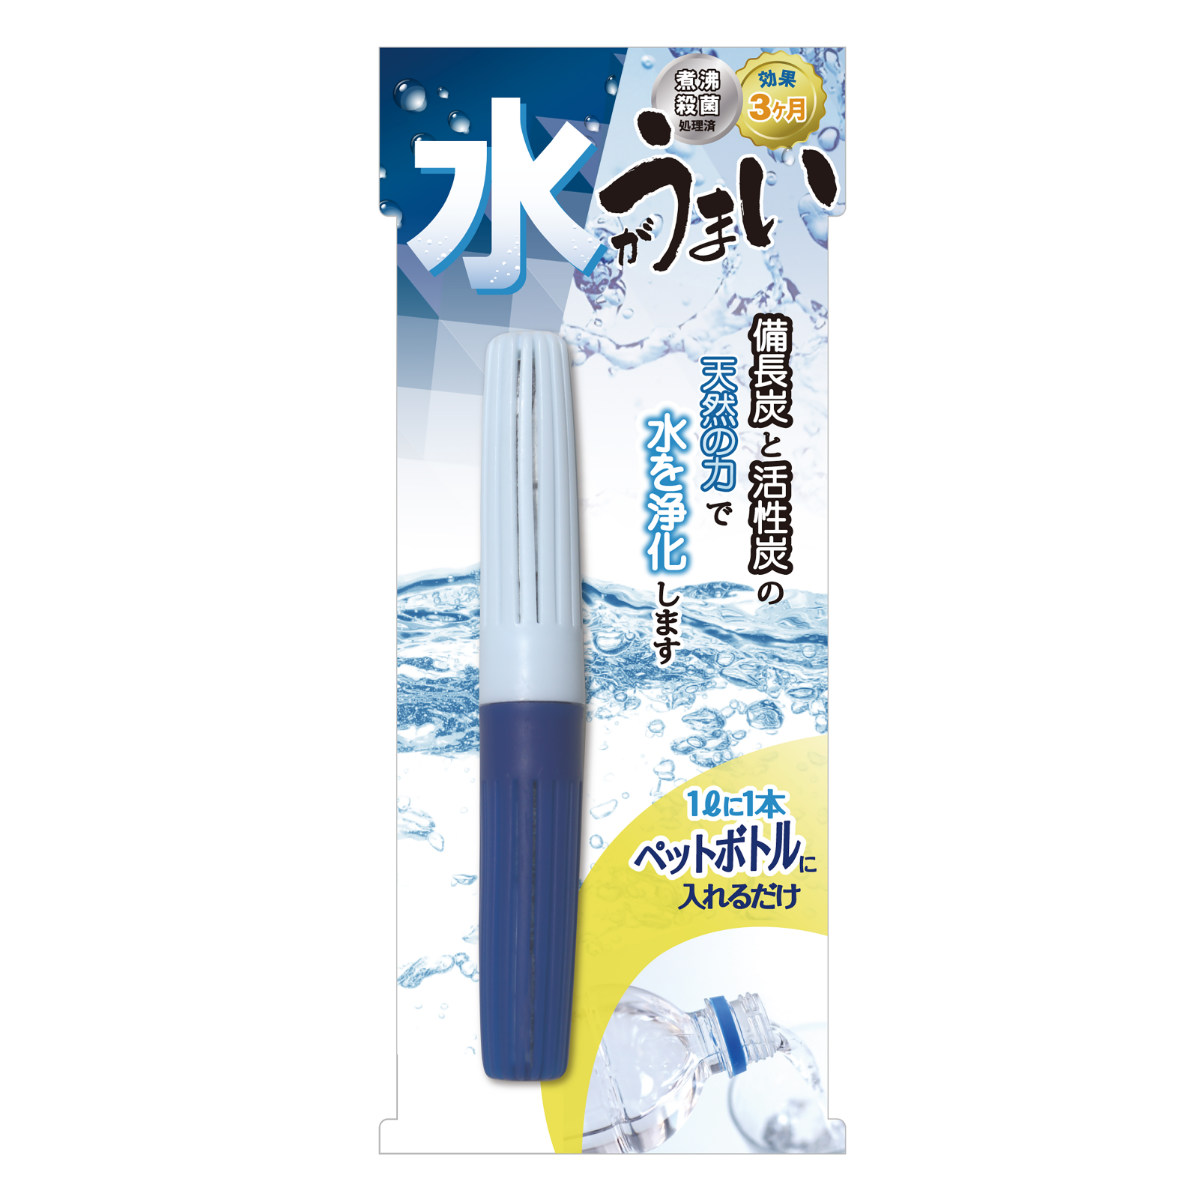 水 浄水 水がうまいＮ （ 日本製 活性炭 備長炭 抗菌 脱臭 簡単 ペットボトル用浄水器 ペットボトル 入れるだけ 浄水器 スティック 携帯